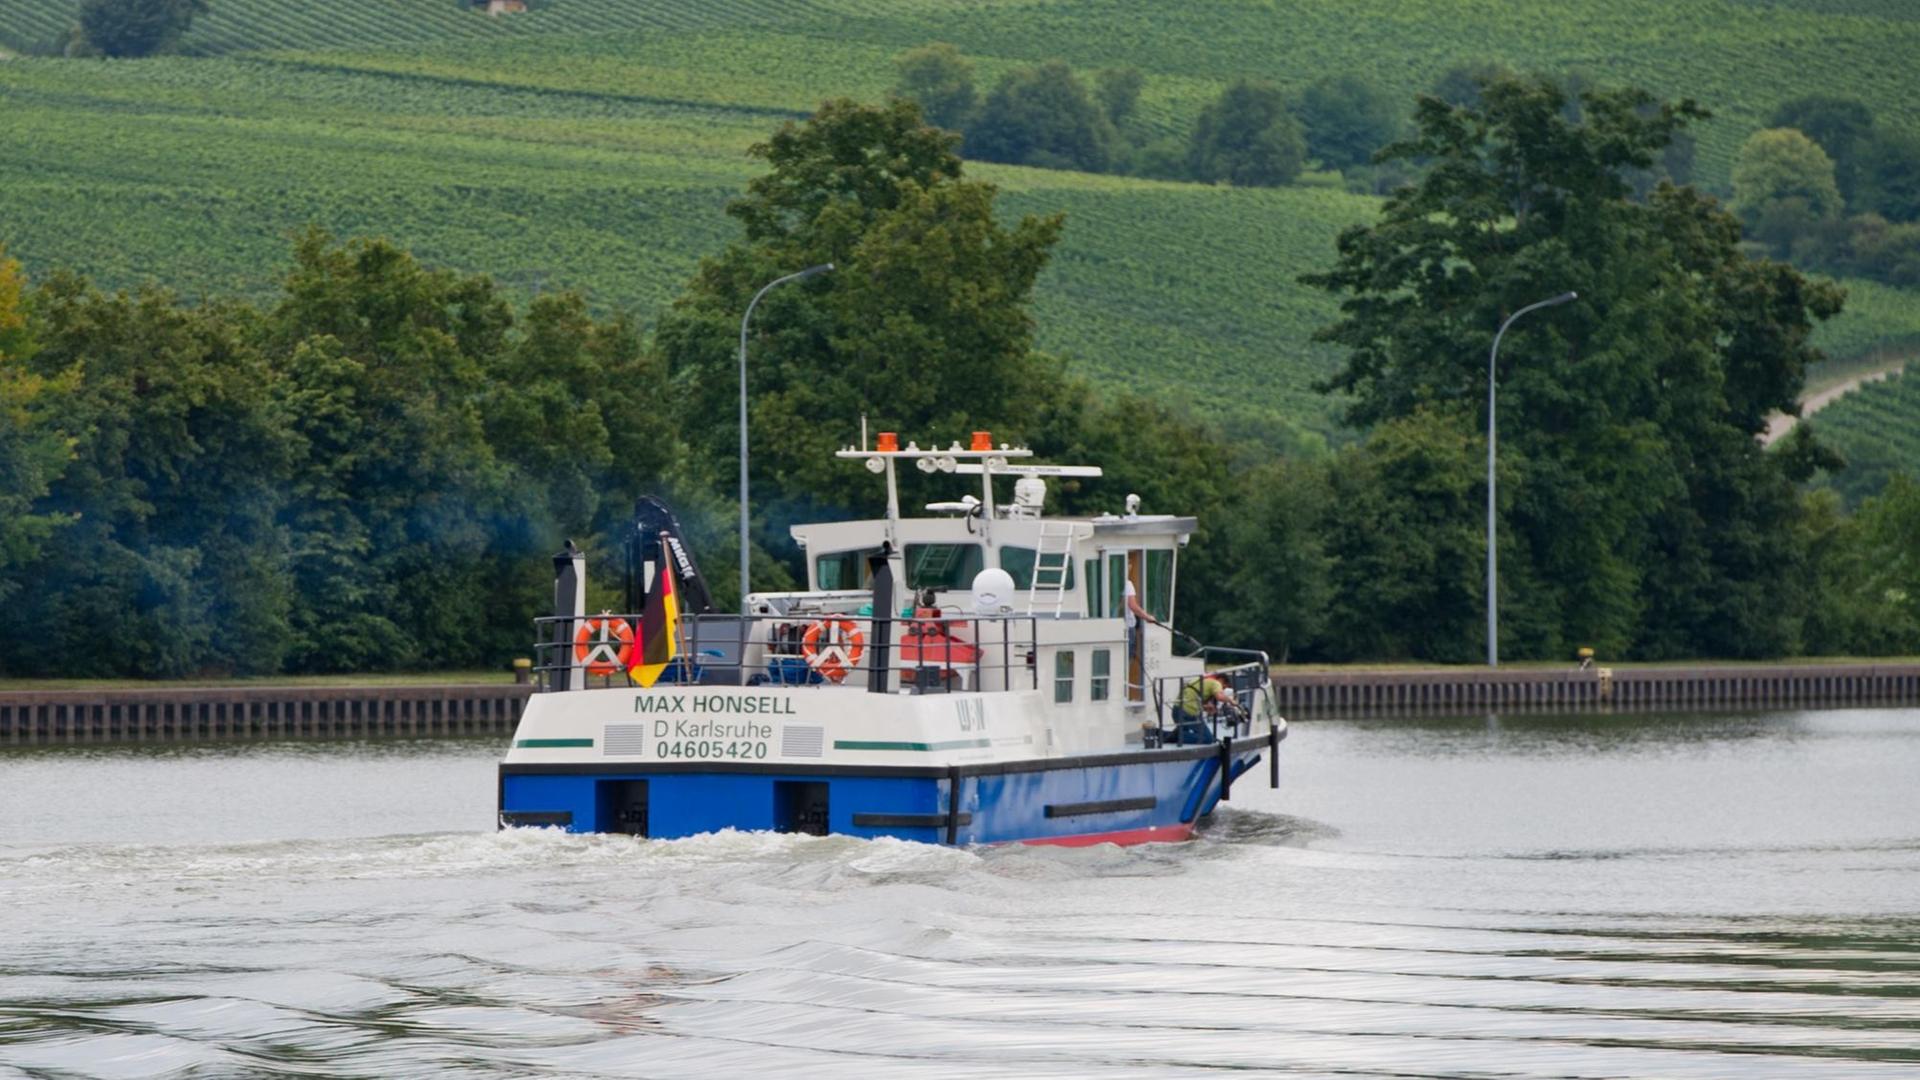 Das LUBW-Messsschiff (Landesanstalt für Umwelt, Messungen und Naturschutz) "Max Honsell" fährt am 07.08.2014 in Lauffen am Neckar (Baden-Württemberg) auf dem Neckar. Das Schiff wird für Mikroplastikuntersuchungen in Rhein und Neckar eingesetzt werden.